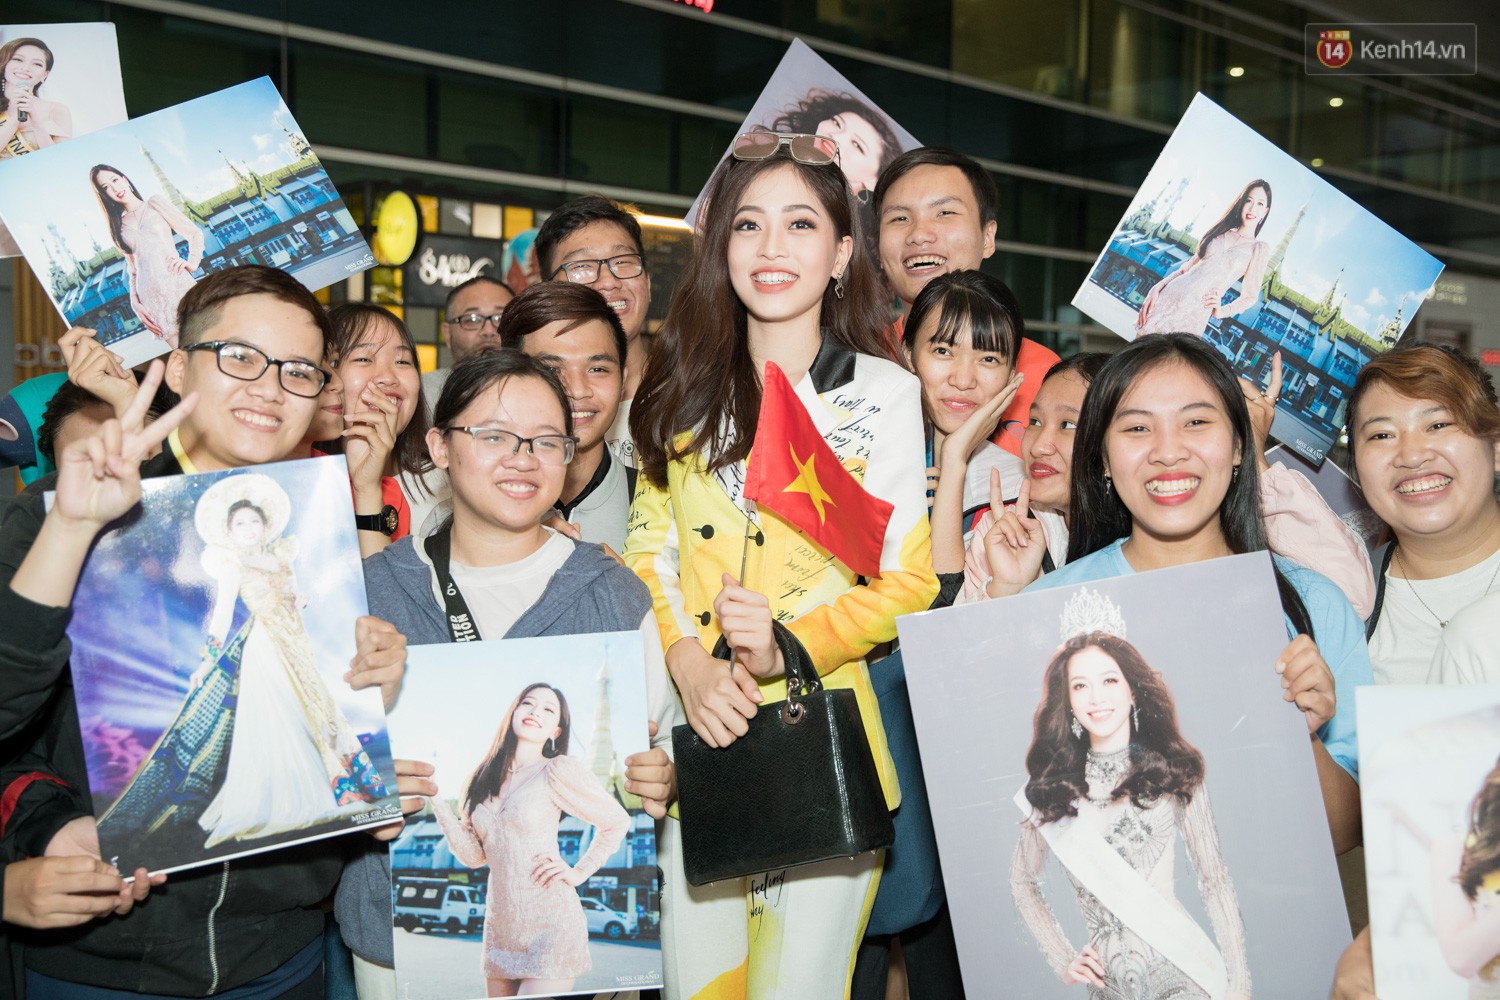 Hoa hậu Tiểu Vy ra tận sân bay đón Phương Nga trở về nước sau hành trình tại Miss Grand International 2018 - Ảnh 6.